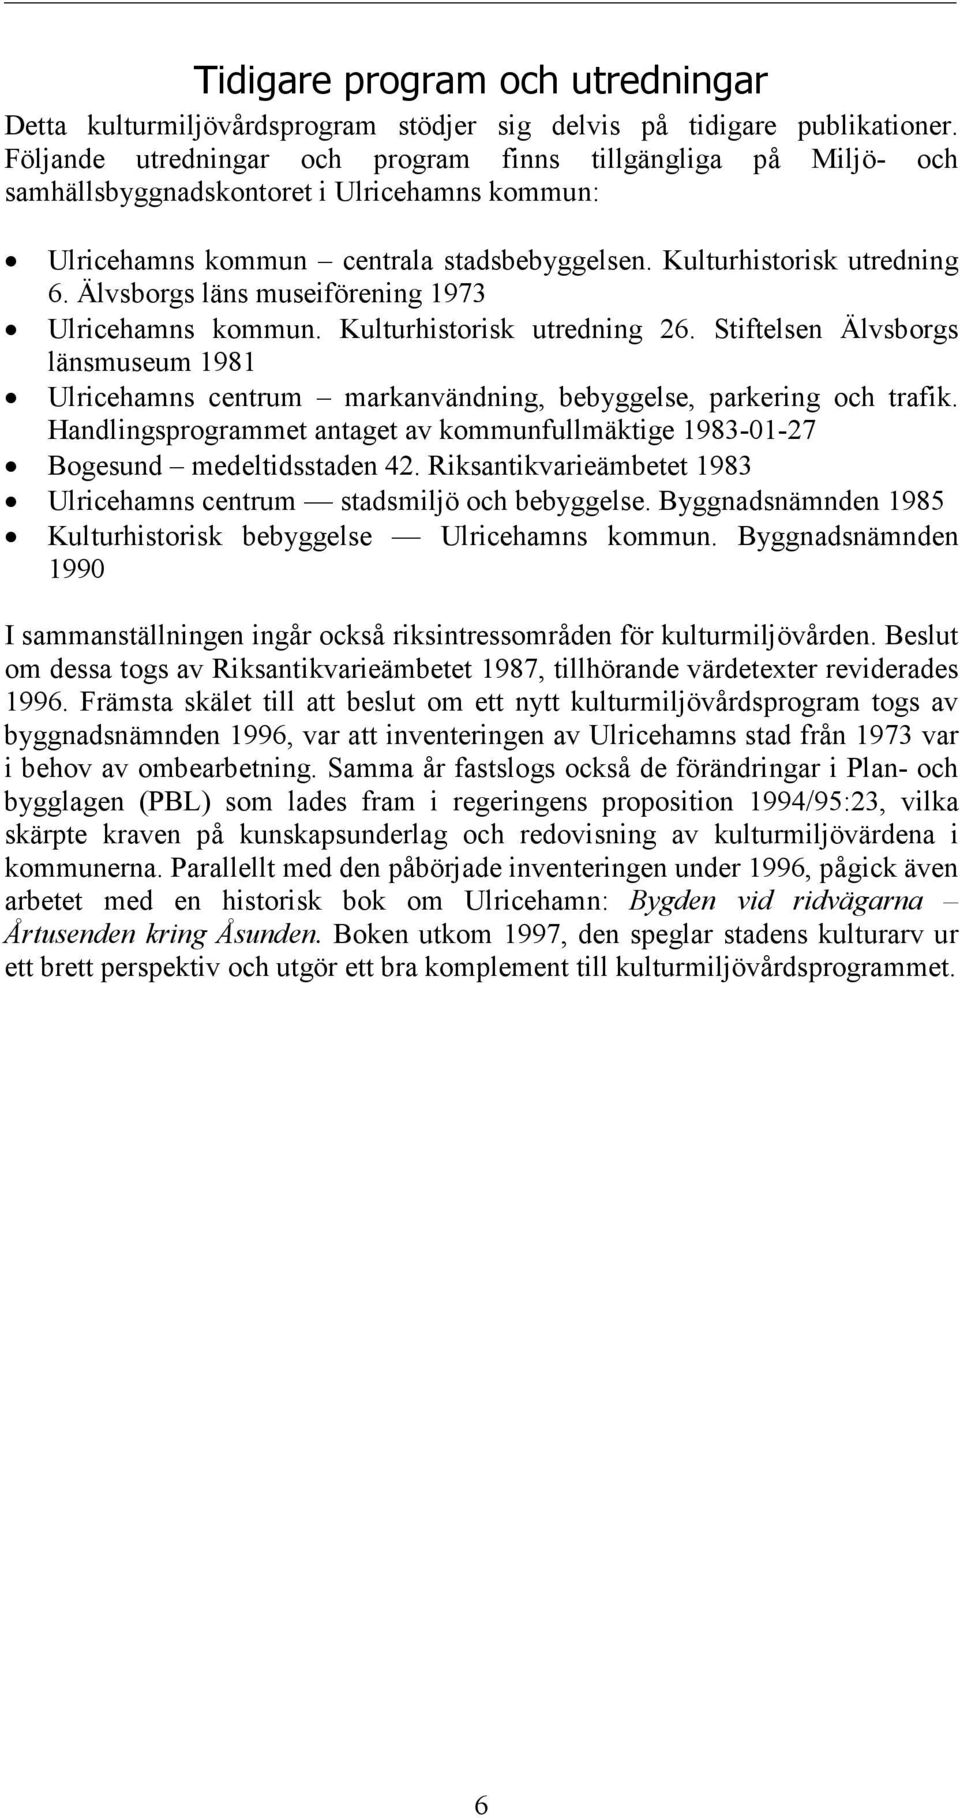 Älvsborgs läns museiförening 1973 Ulricehamns kommun. Kulturhistorisk utredning 26. Stiftelsen Älvsborgs länsmuseum 1981 Ulricehamns centrum markanvändning, bebyggelse, parkering och trafik.